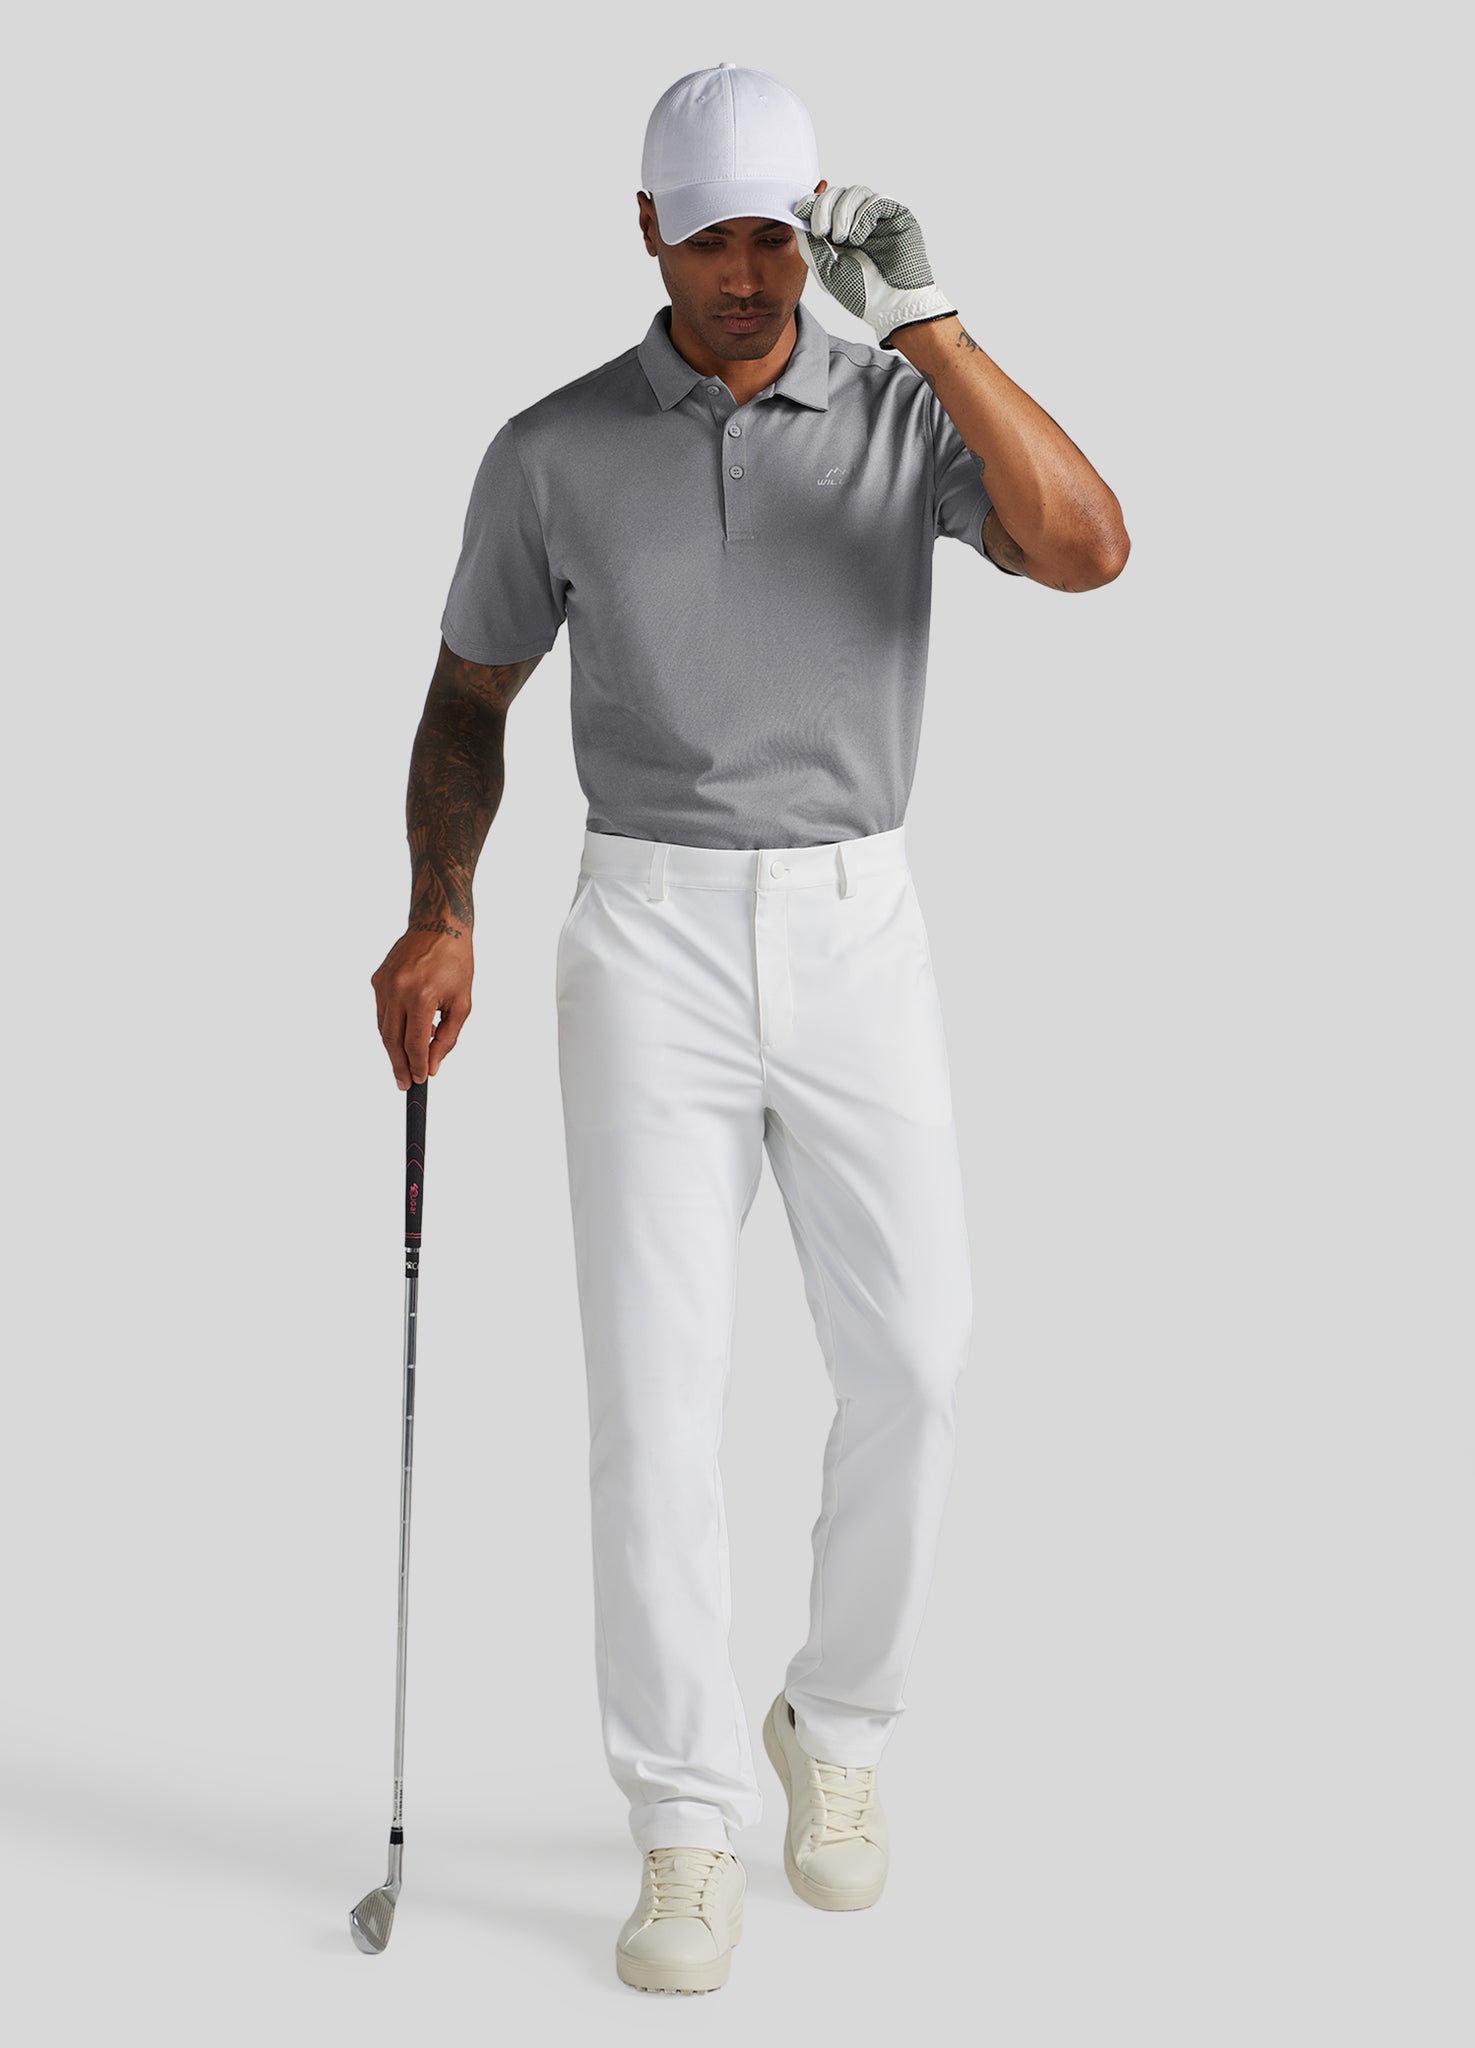 Men's Casual Golf Polo Shirt